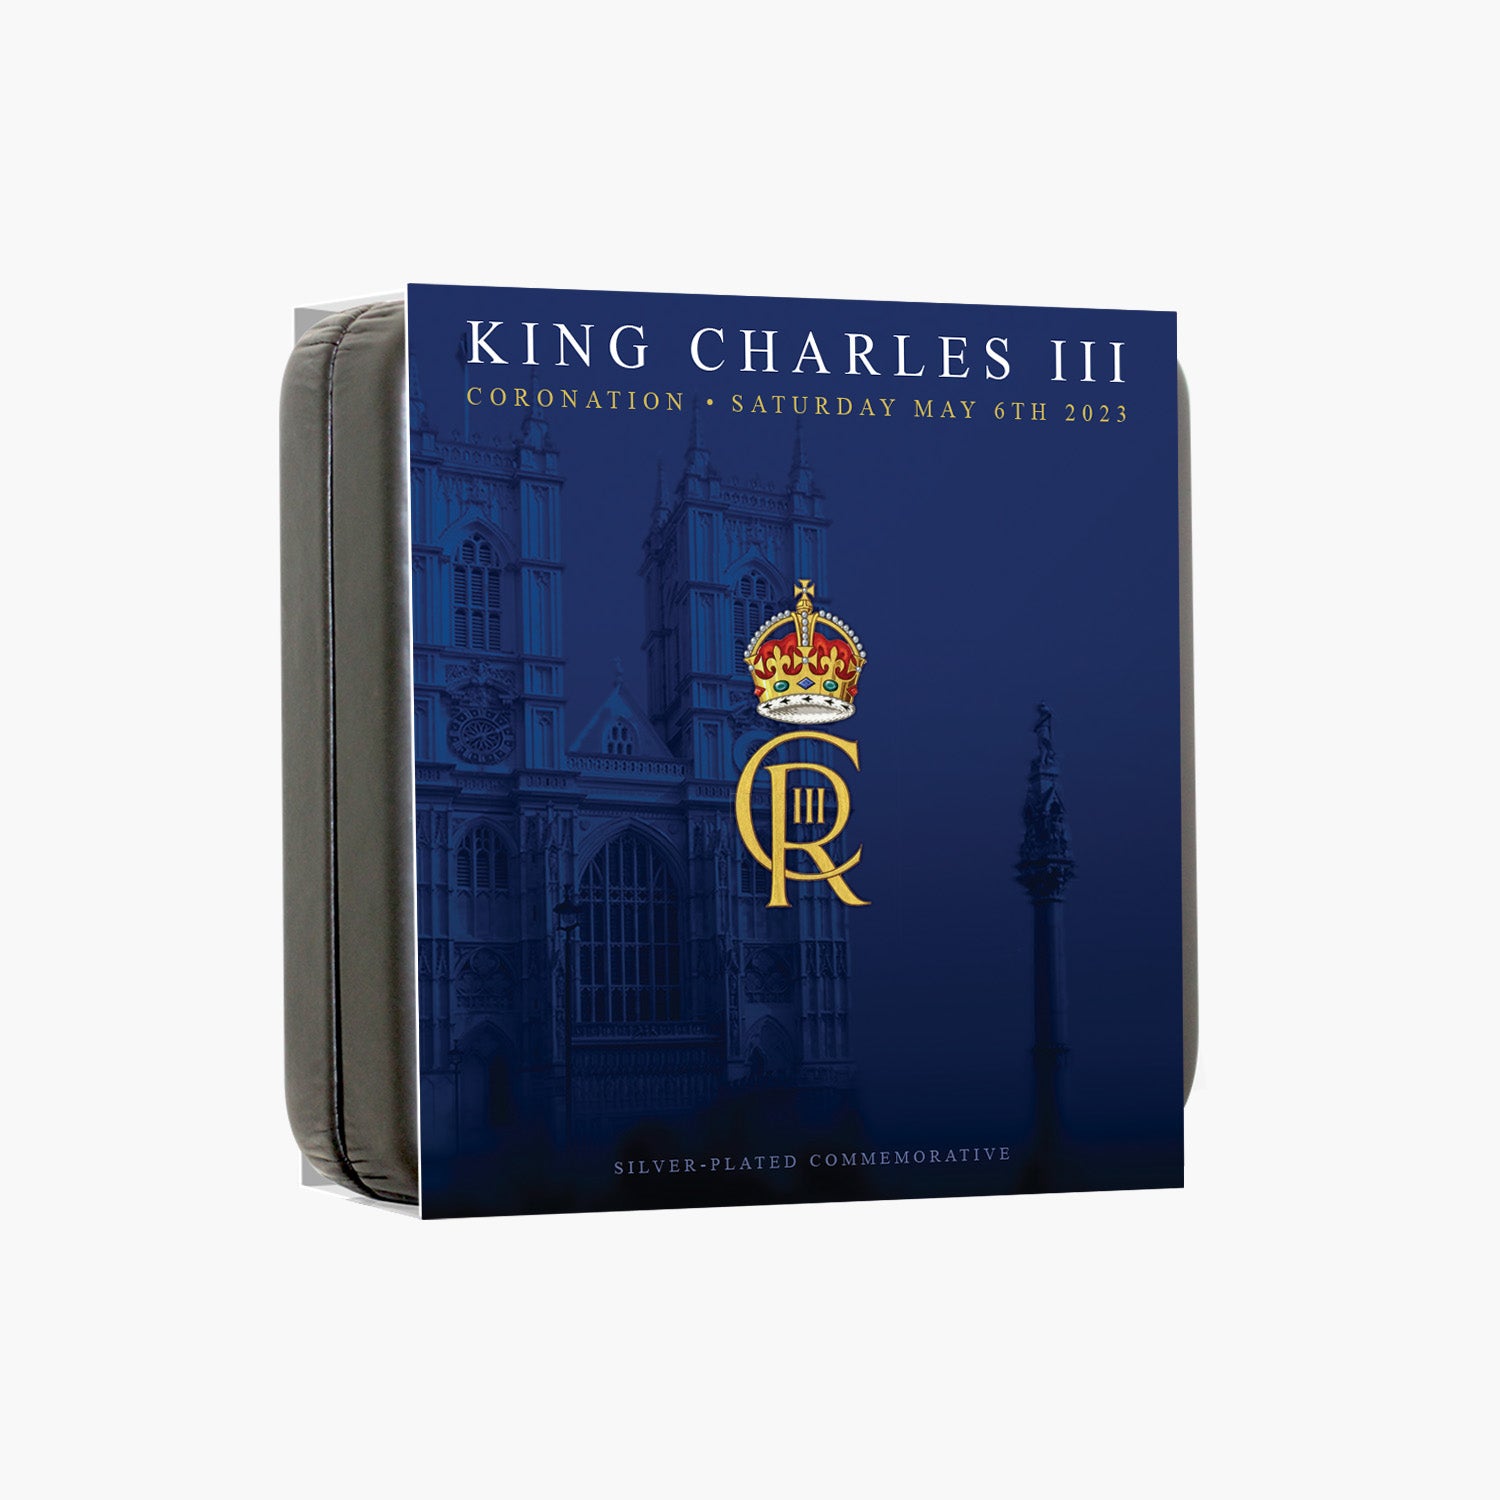 チャールズ 3 世国王陛下の公式戴冠式肖像画プレミア エディション